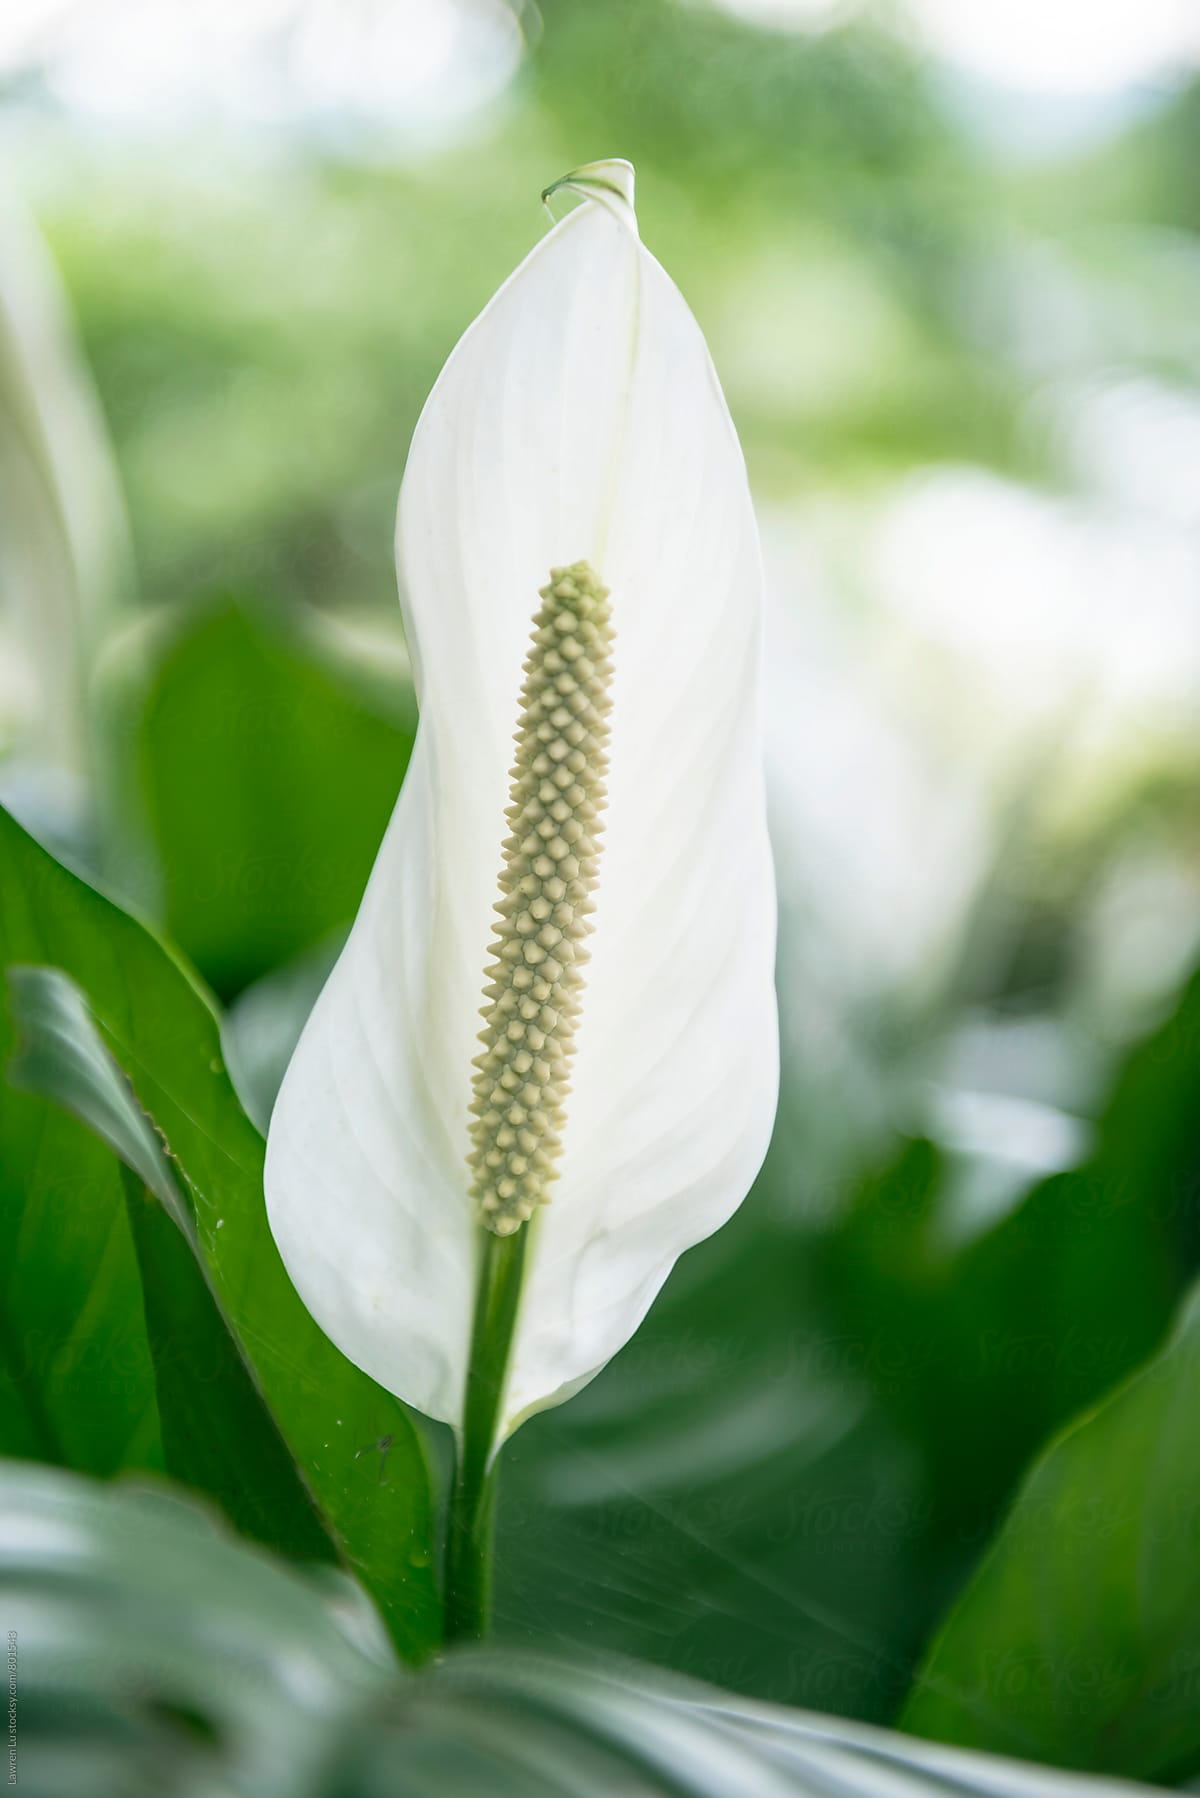 Pretty pure white arum lily